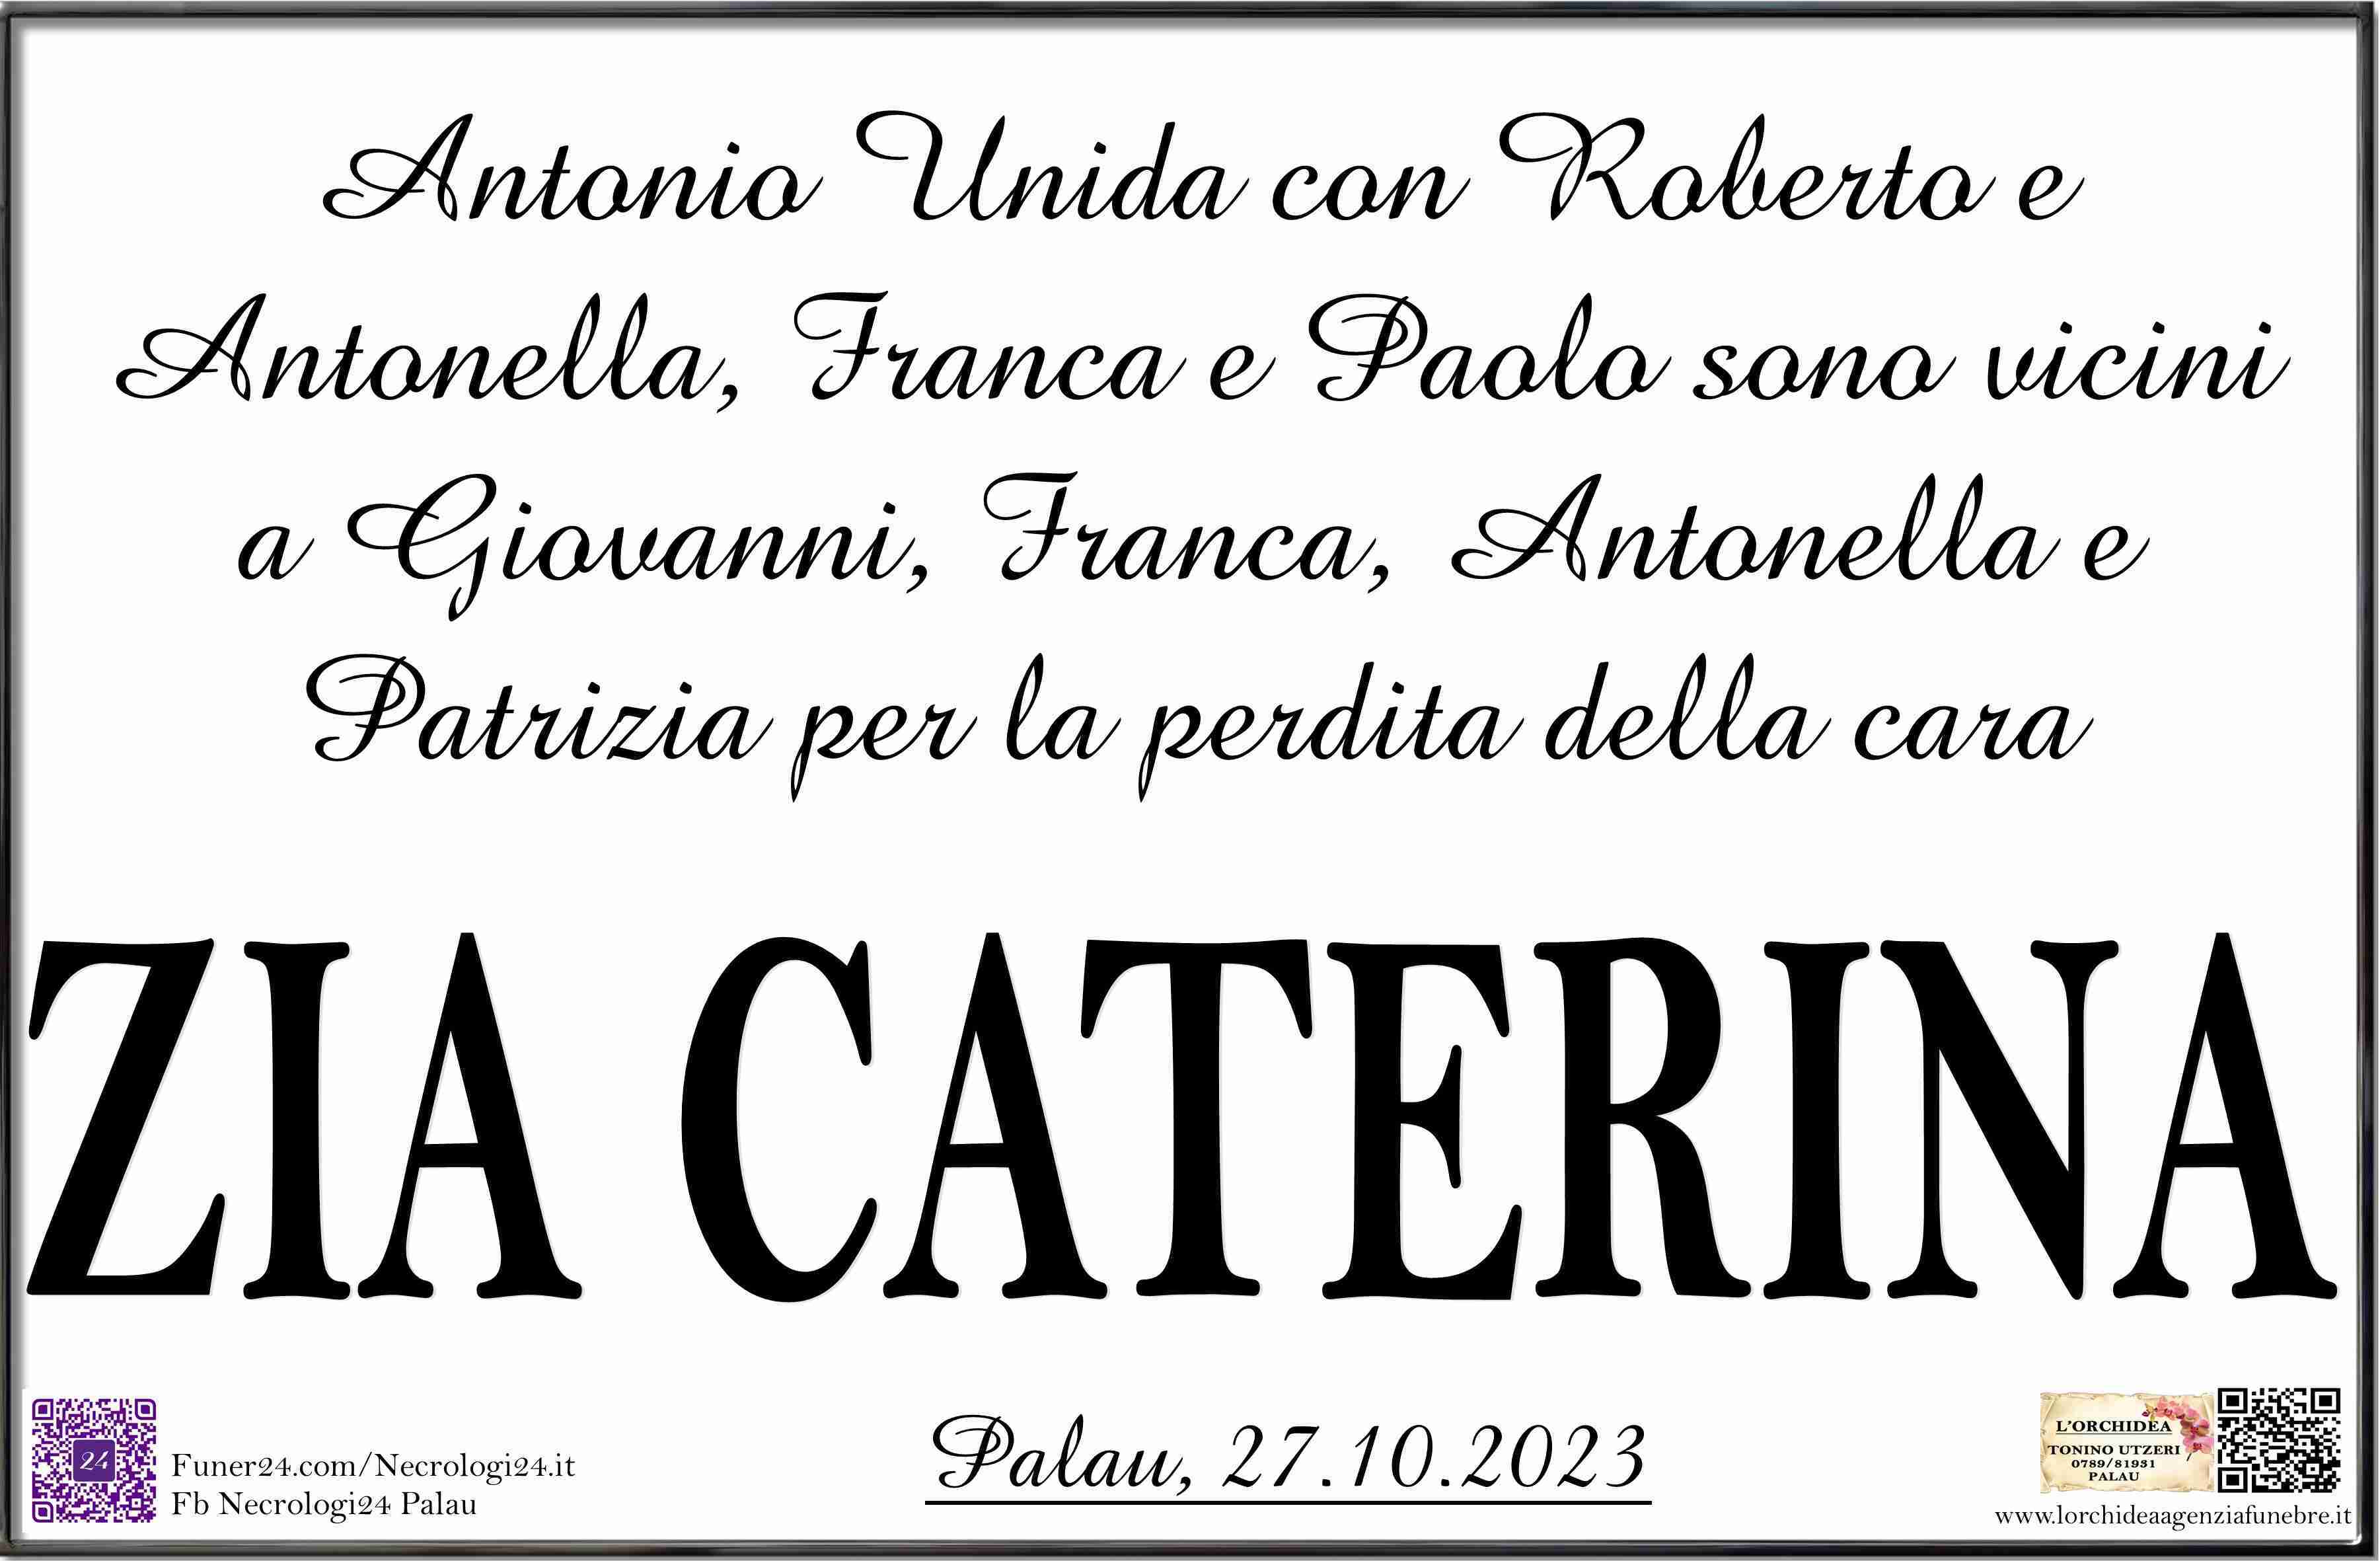 Luciano Caterina